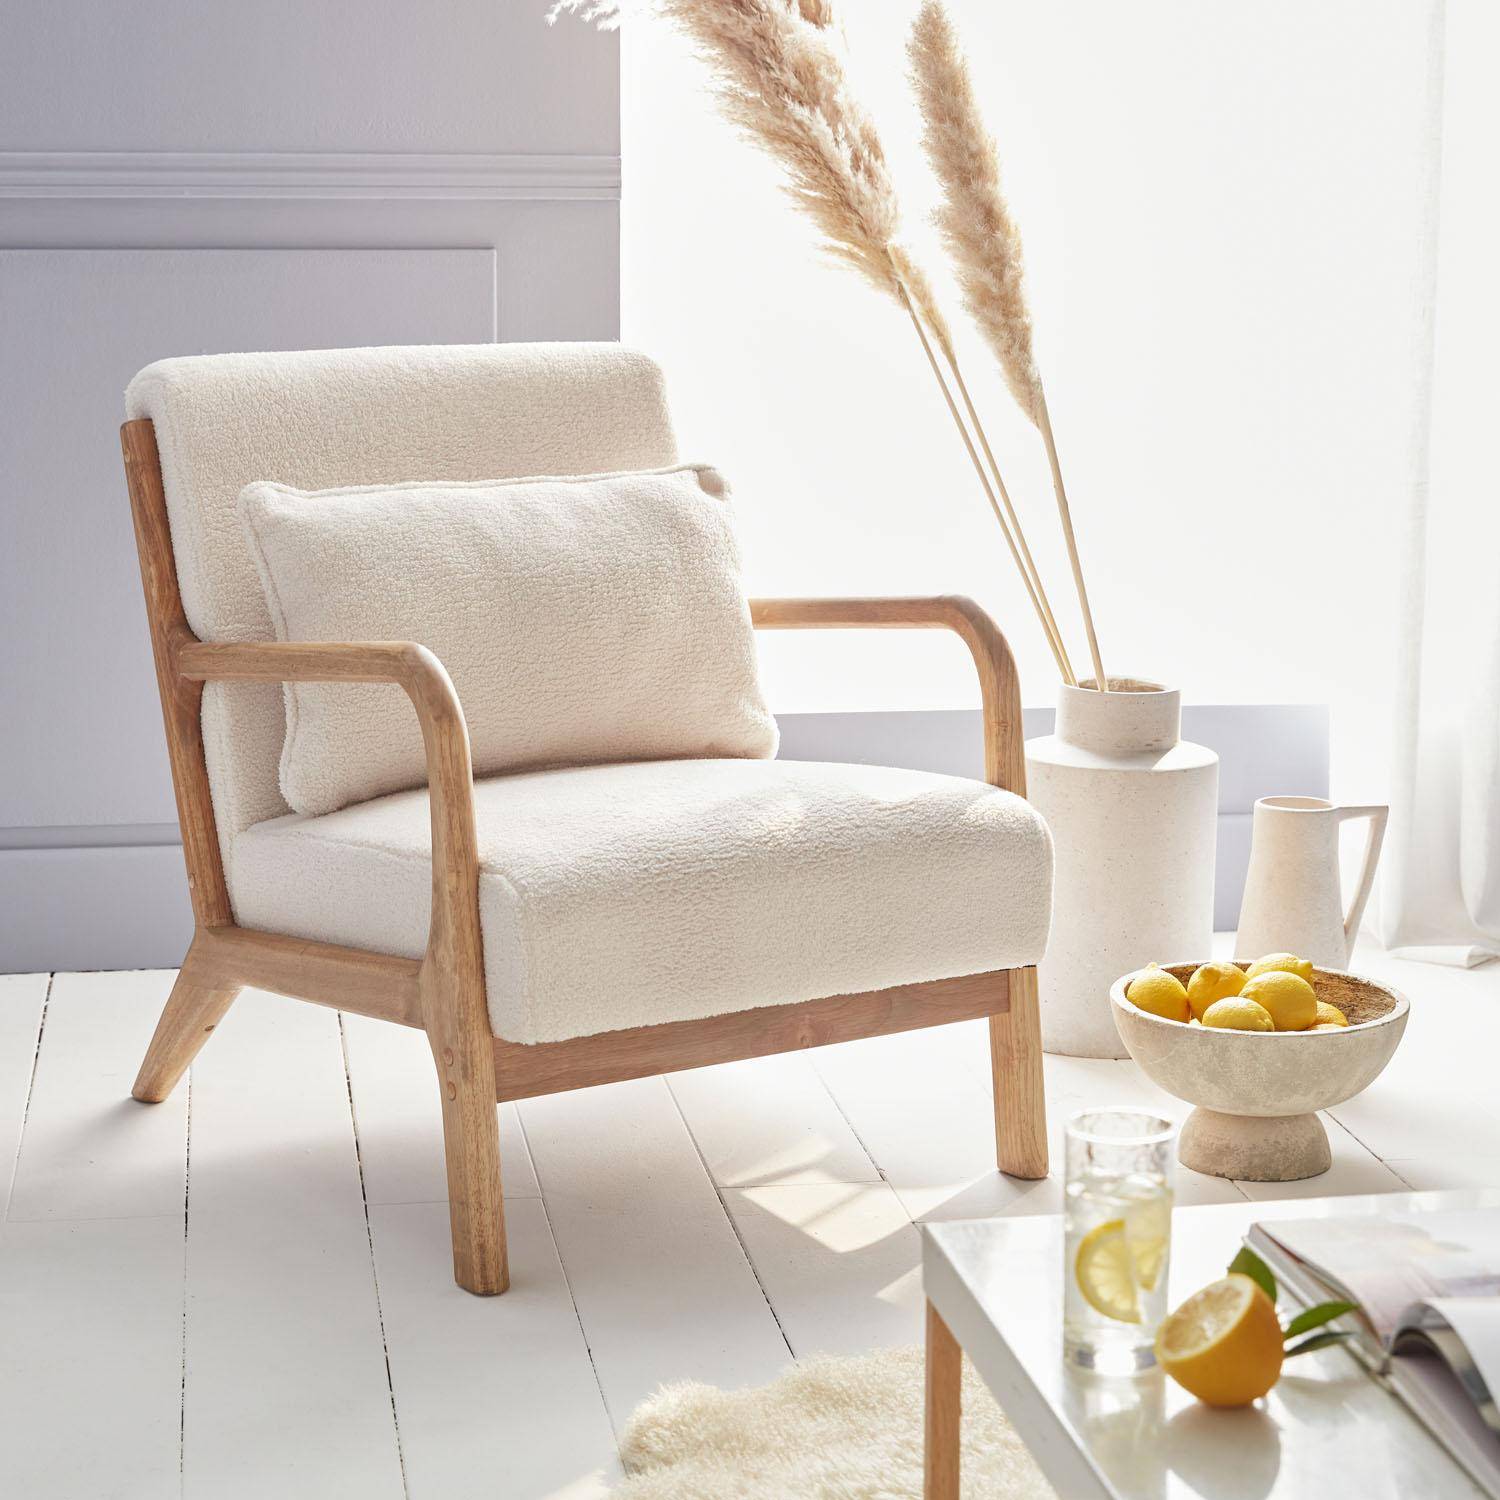 Sillón de rizos blancos, madera y tela, 1 asiento recto fijo, patas de compás escandinavas, armazón de madera maciza, asiento cómodo Photo1